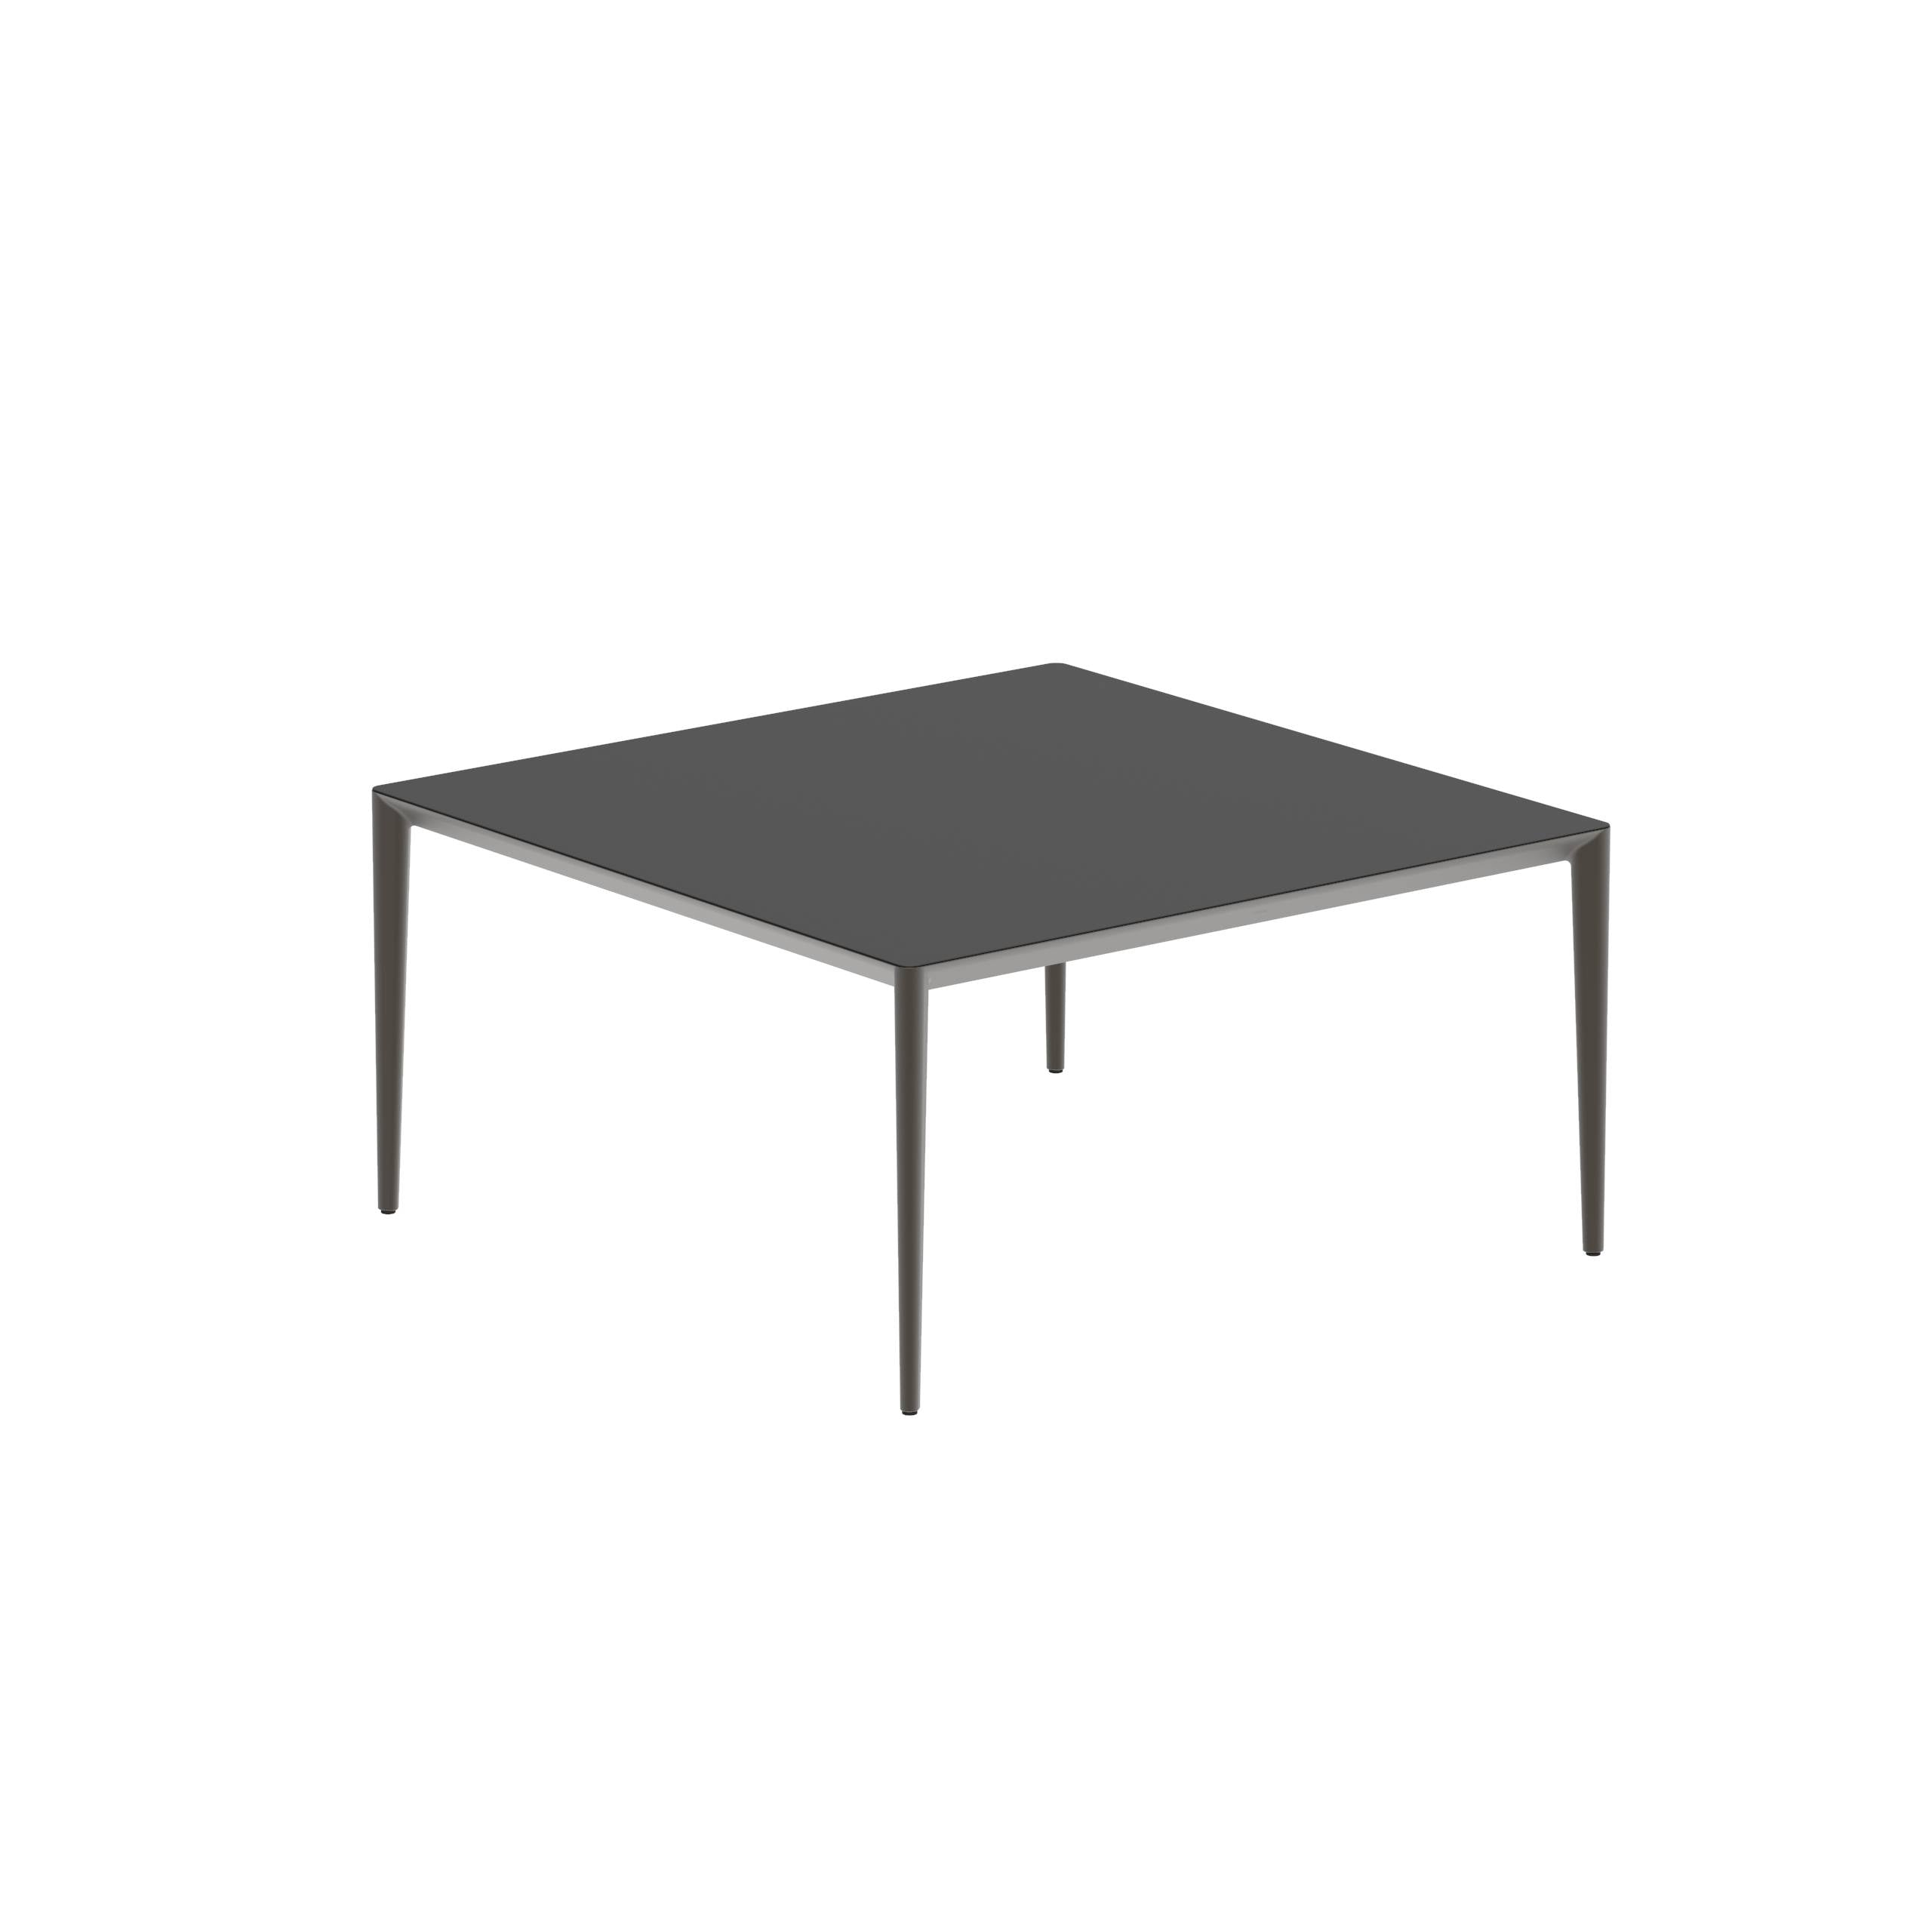 U-Nite Table 150x150cm Bronze With Ceramic Tabletop In Black